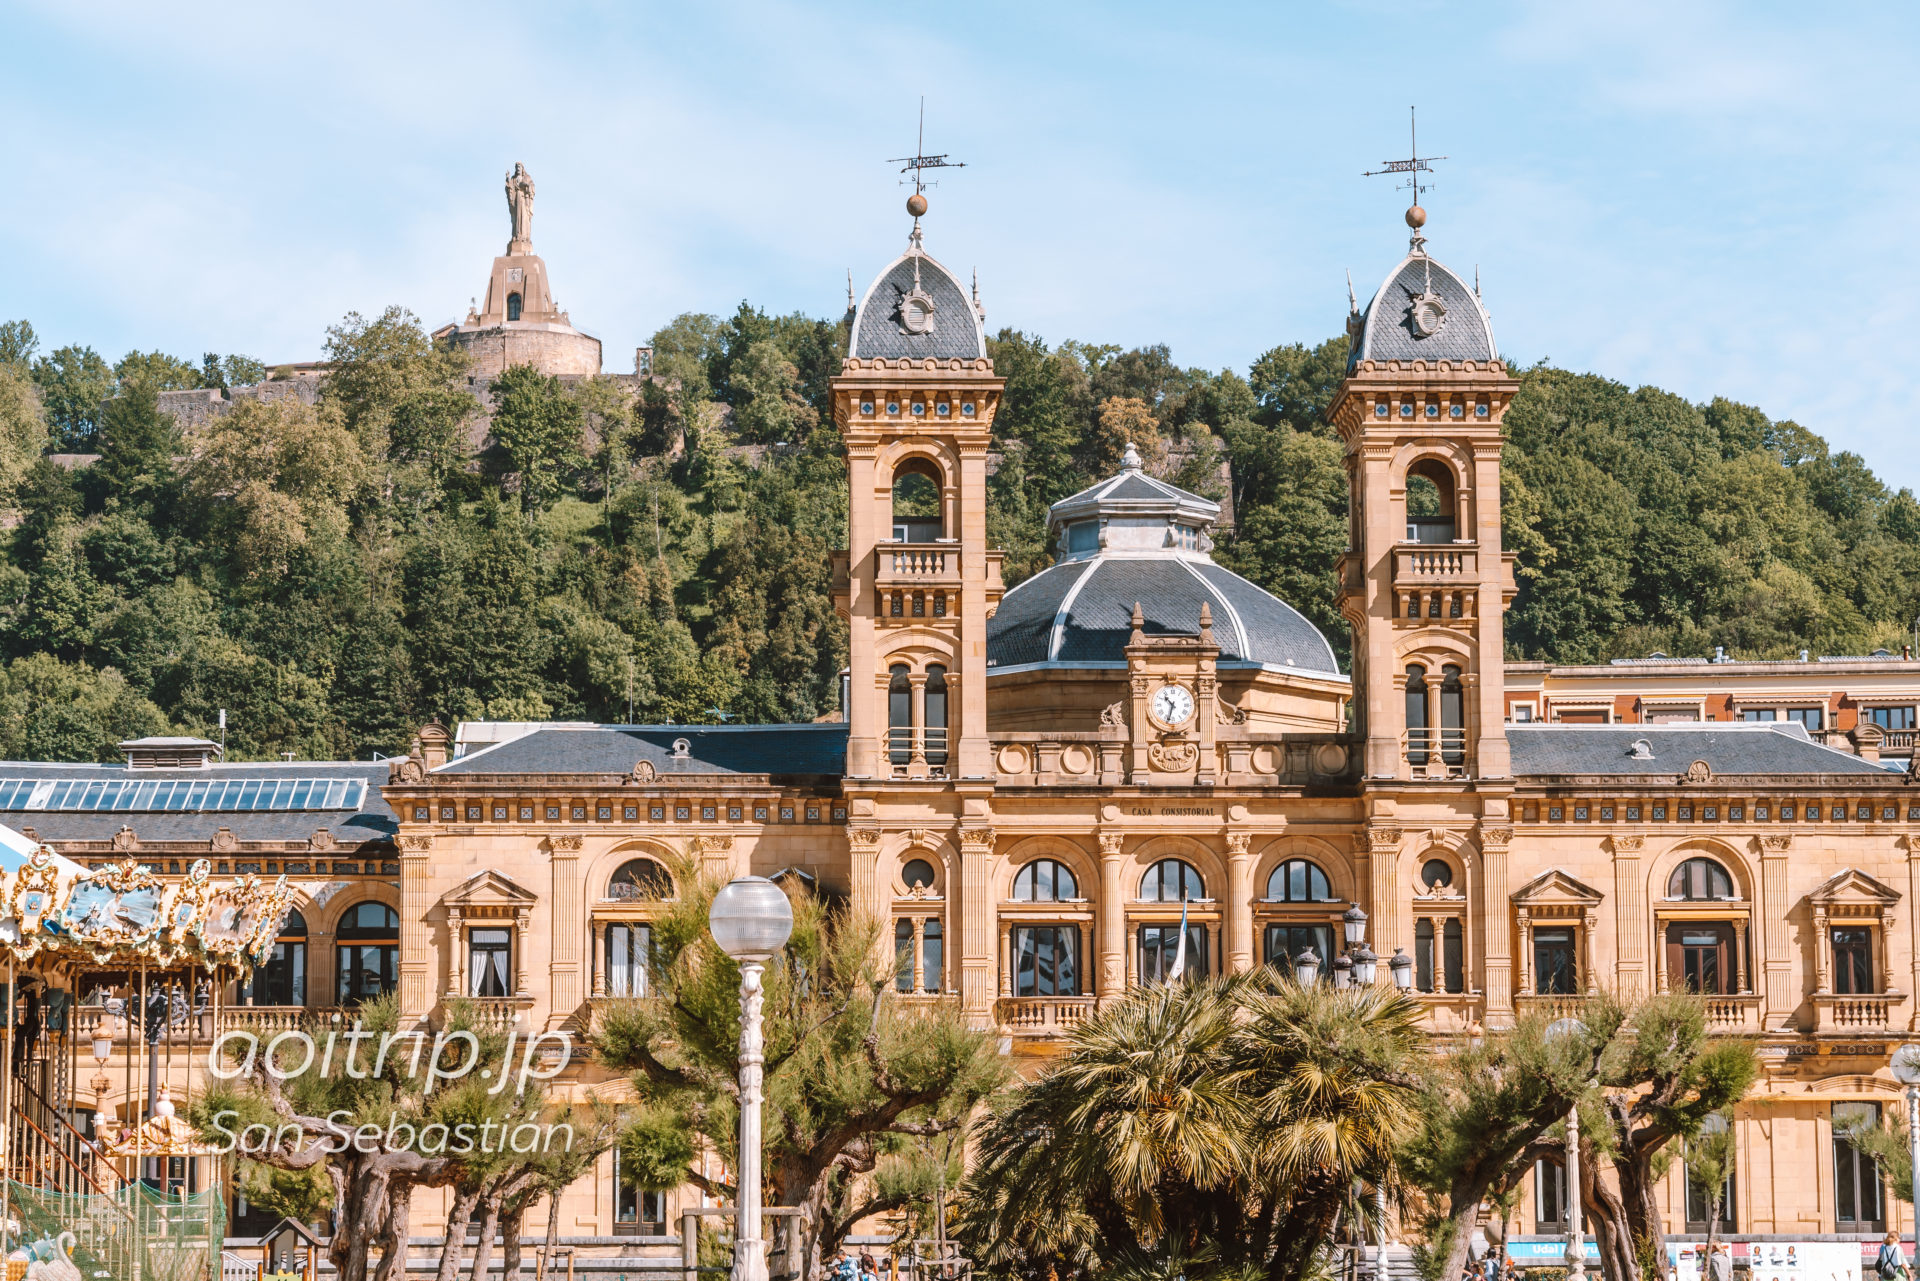 サンセバスティアンの市庁舎とモンテウルグルのキリスト像